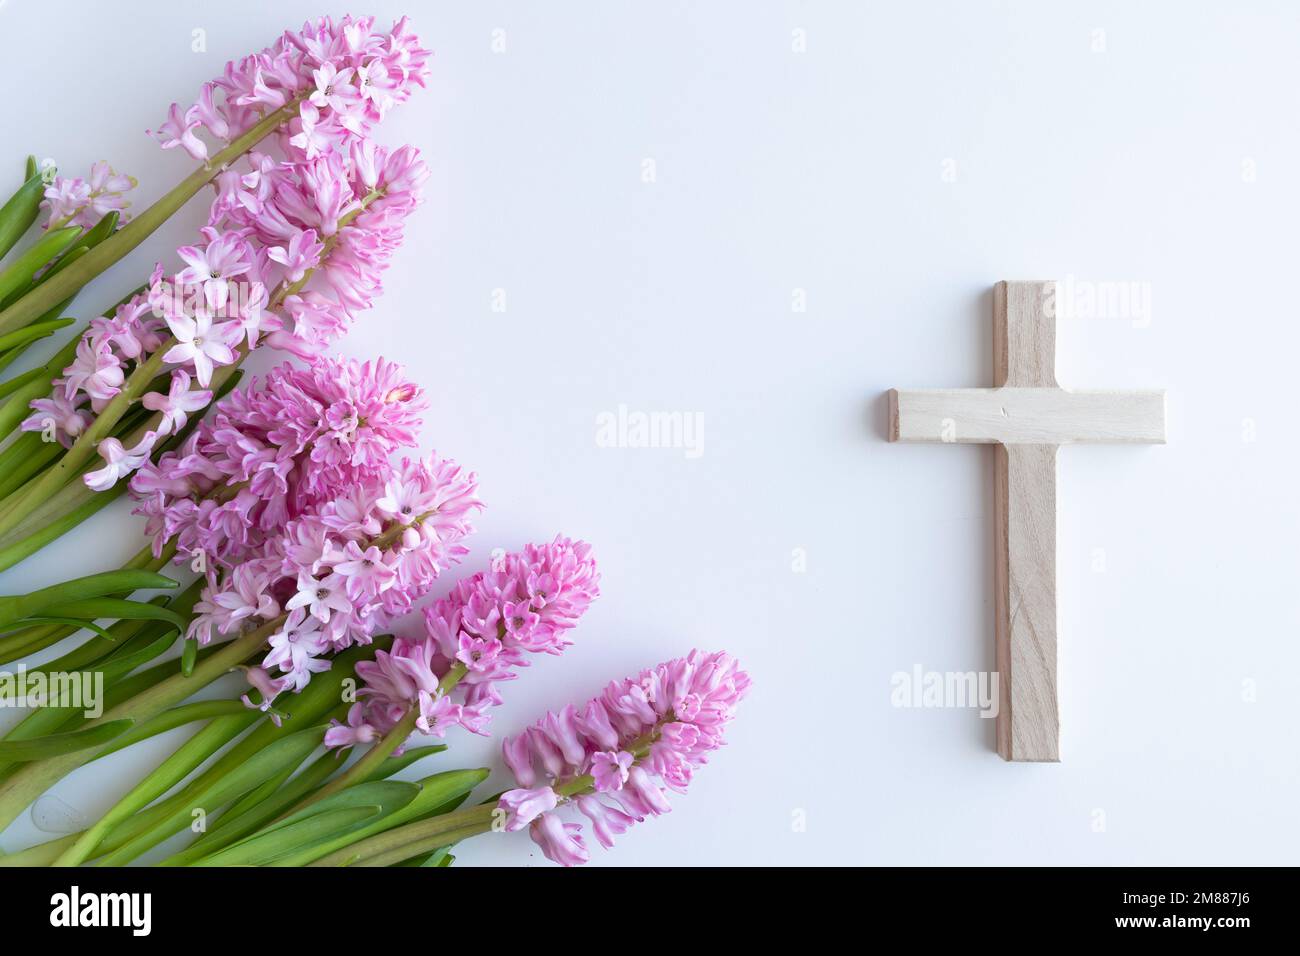 Semplice croce cristiana in legno su sfondo bianco con un bouquet di fiori rosa giacinto come un bordo con spazio copia Foto Stock